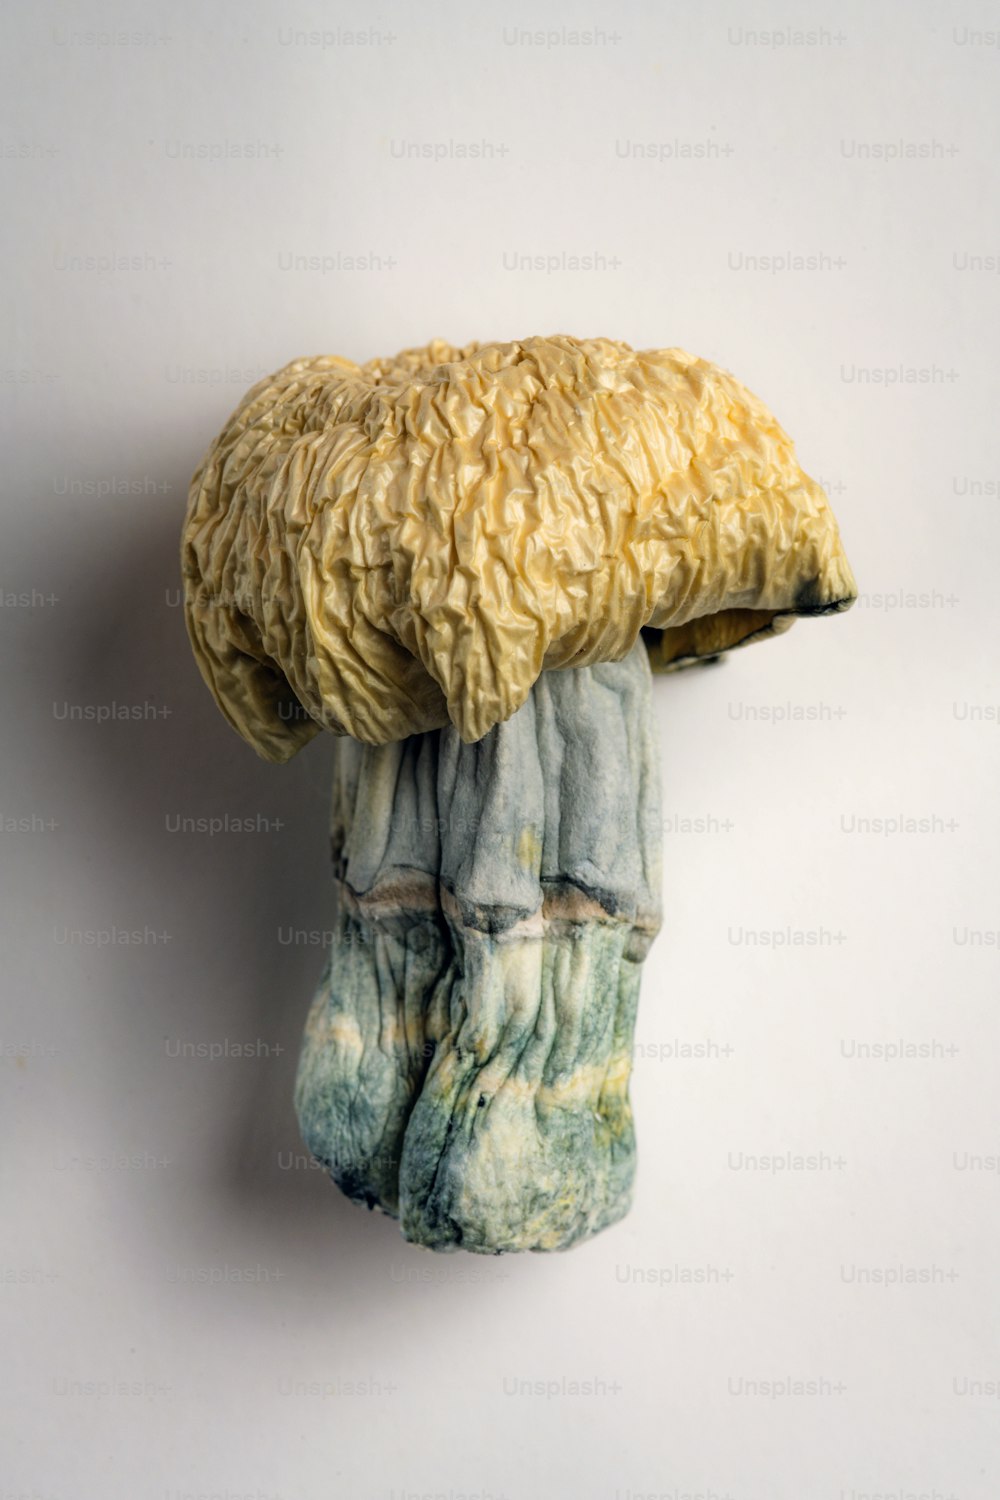 Una scultura di un fungo è appesa a un muro